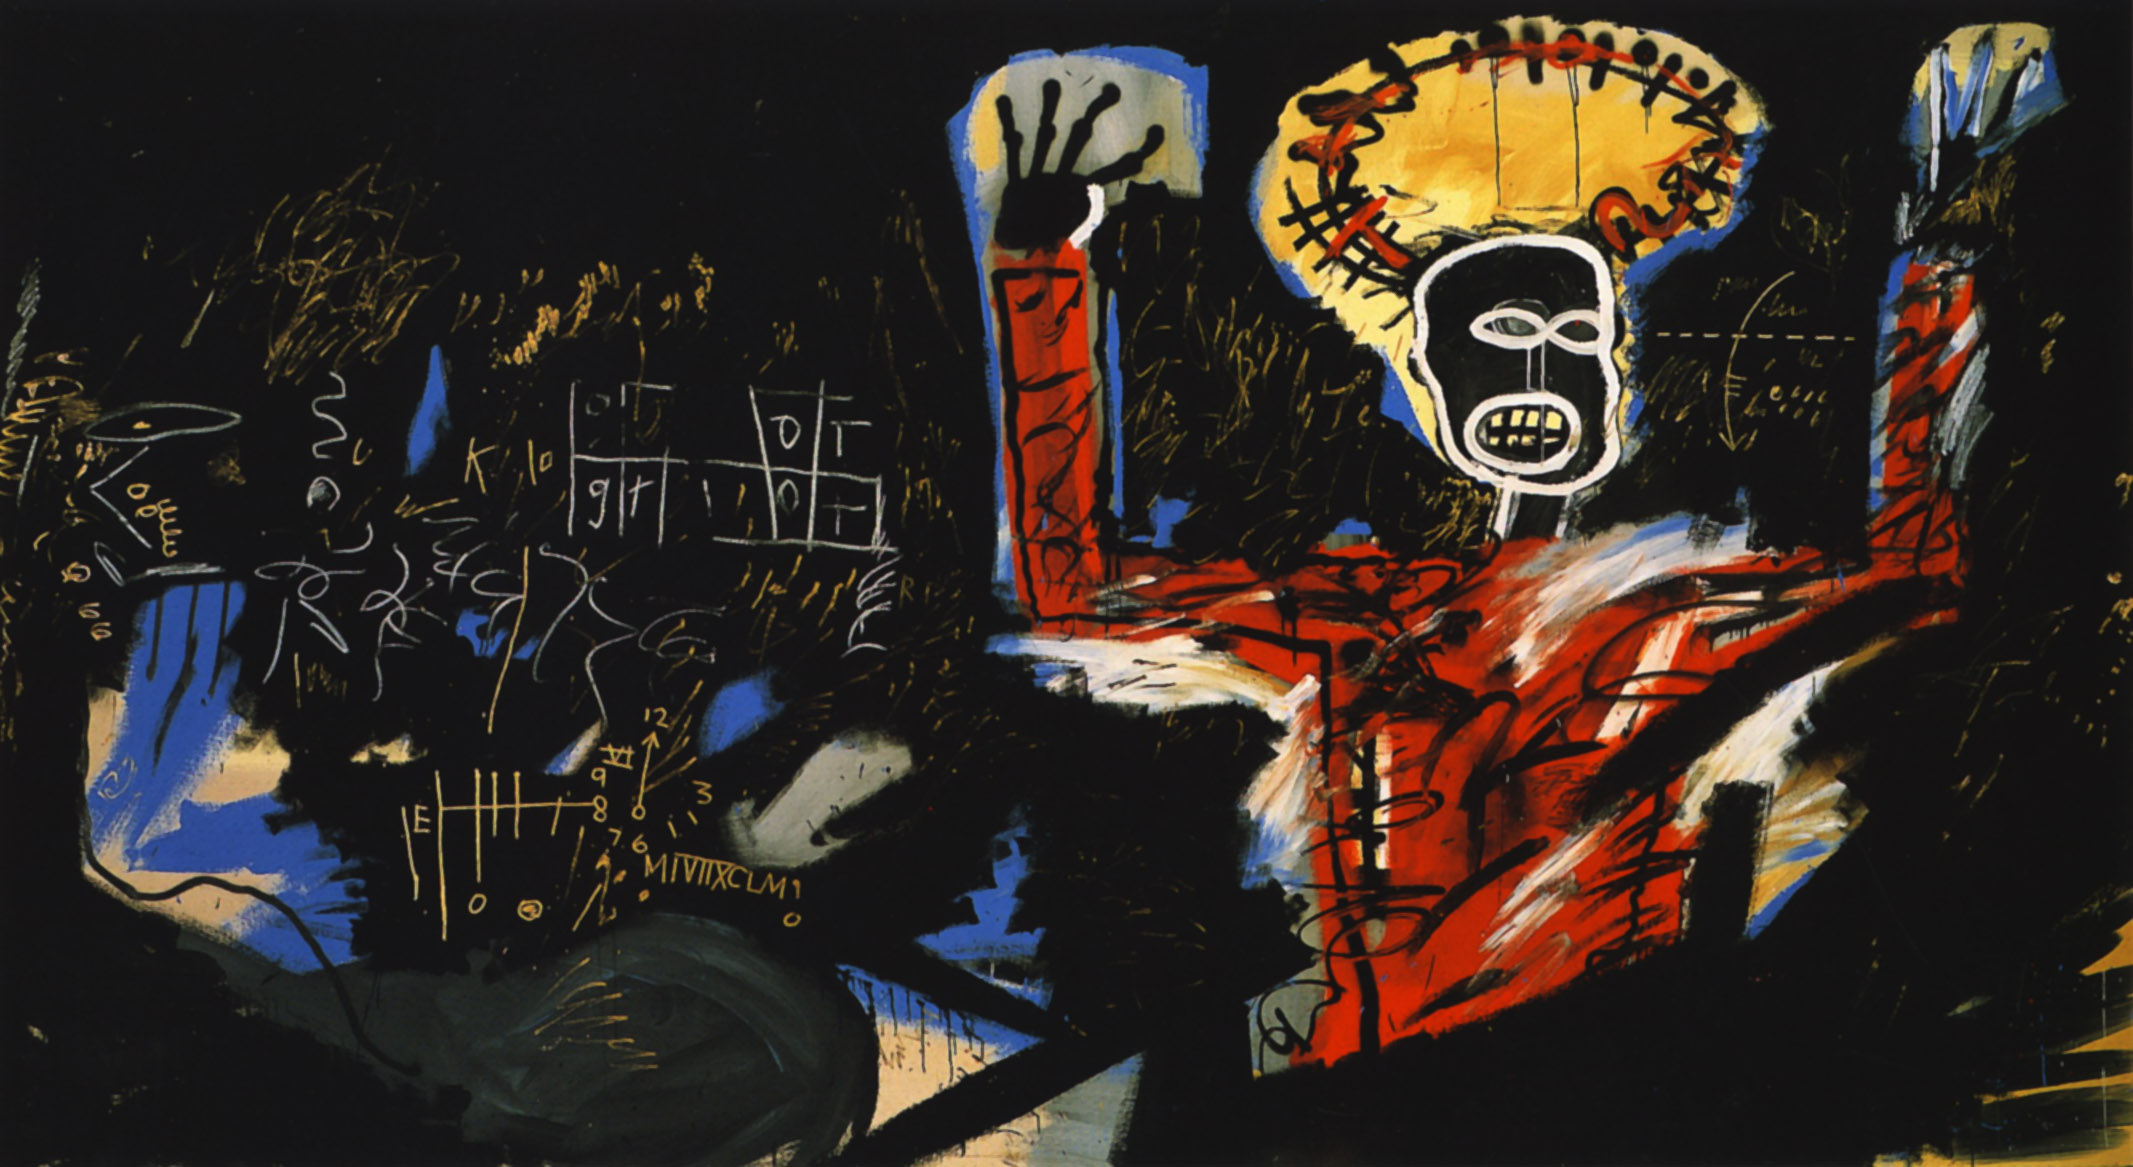 Zysk I by Jean-Michel Basquiat - 1982 - 220 x 400 cm 